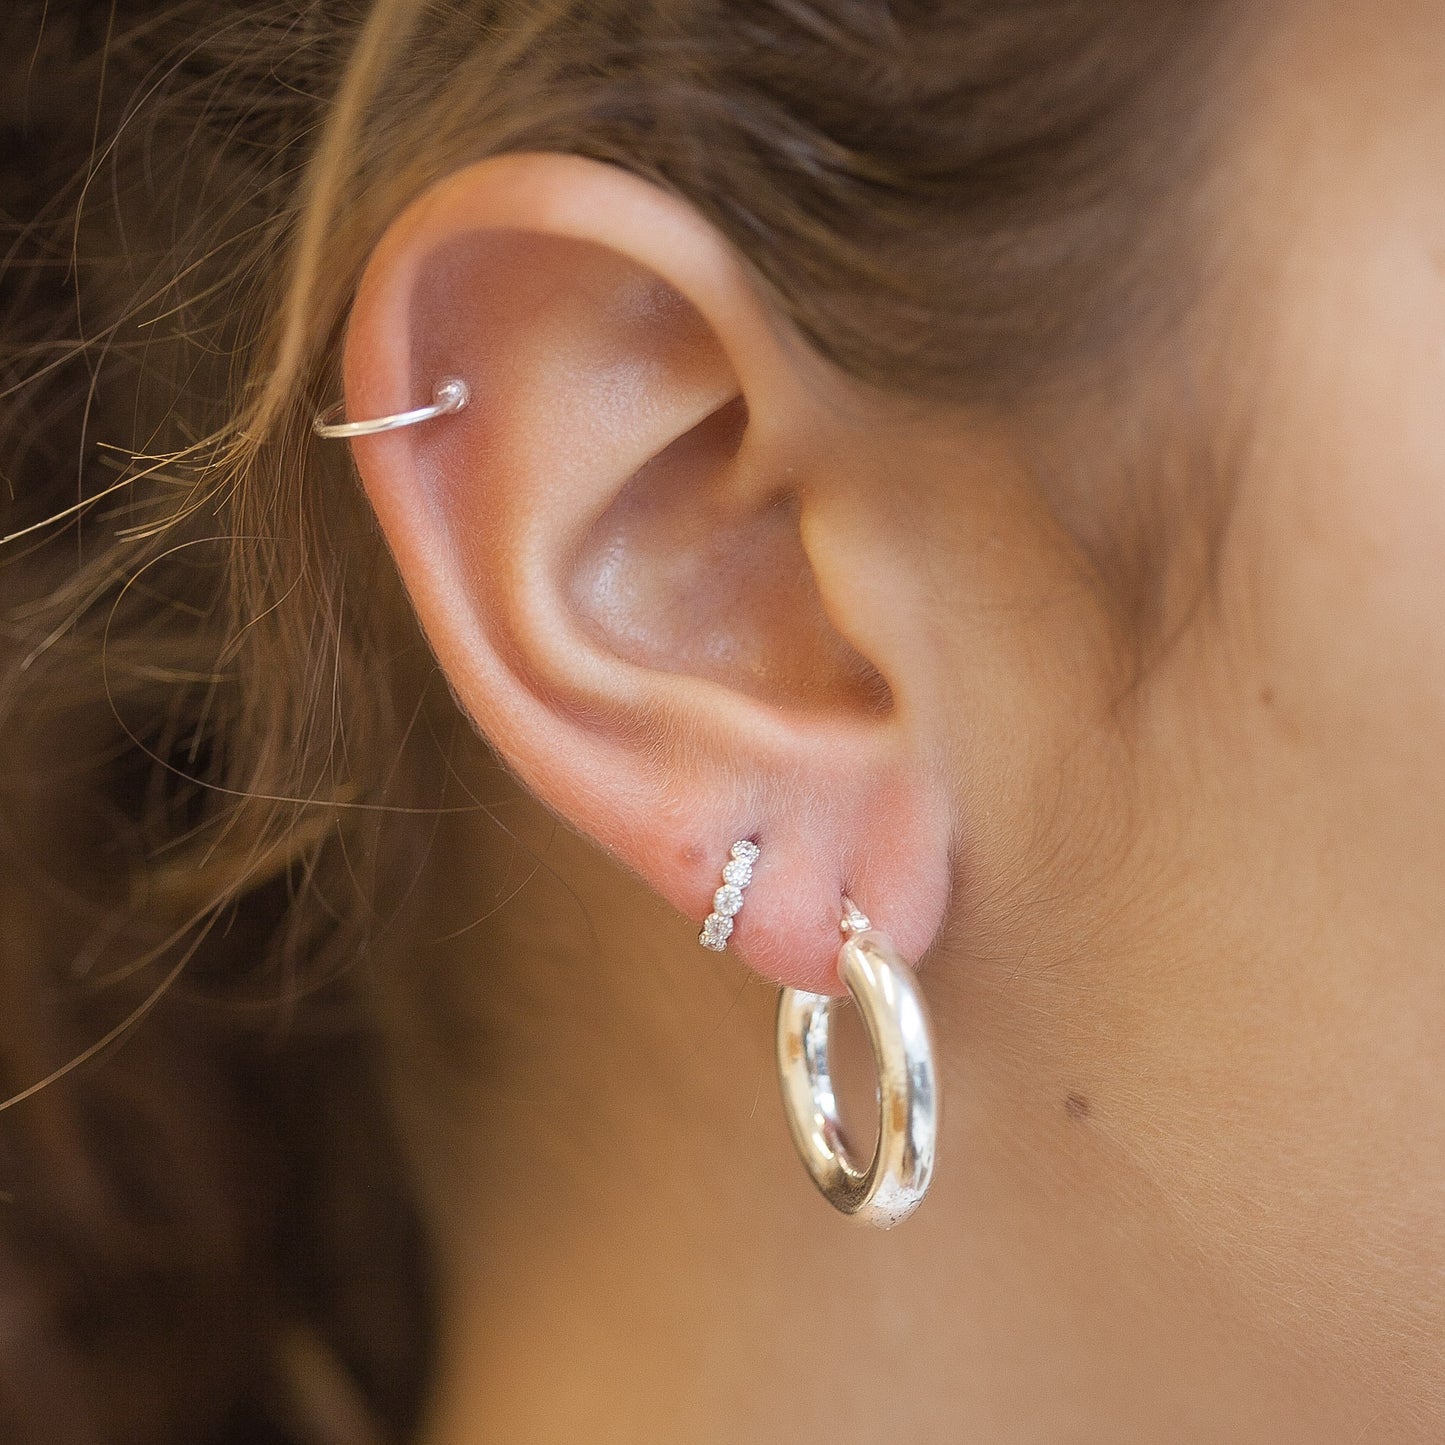 Bague d'oreille Ear cuff en argent, faux piercing